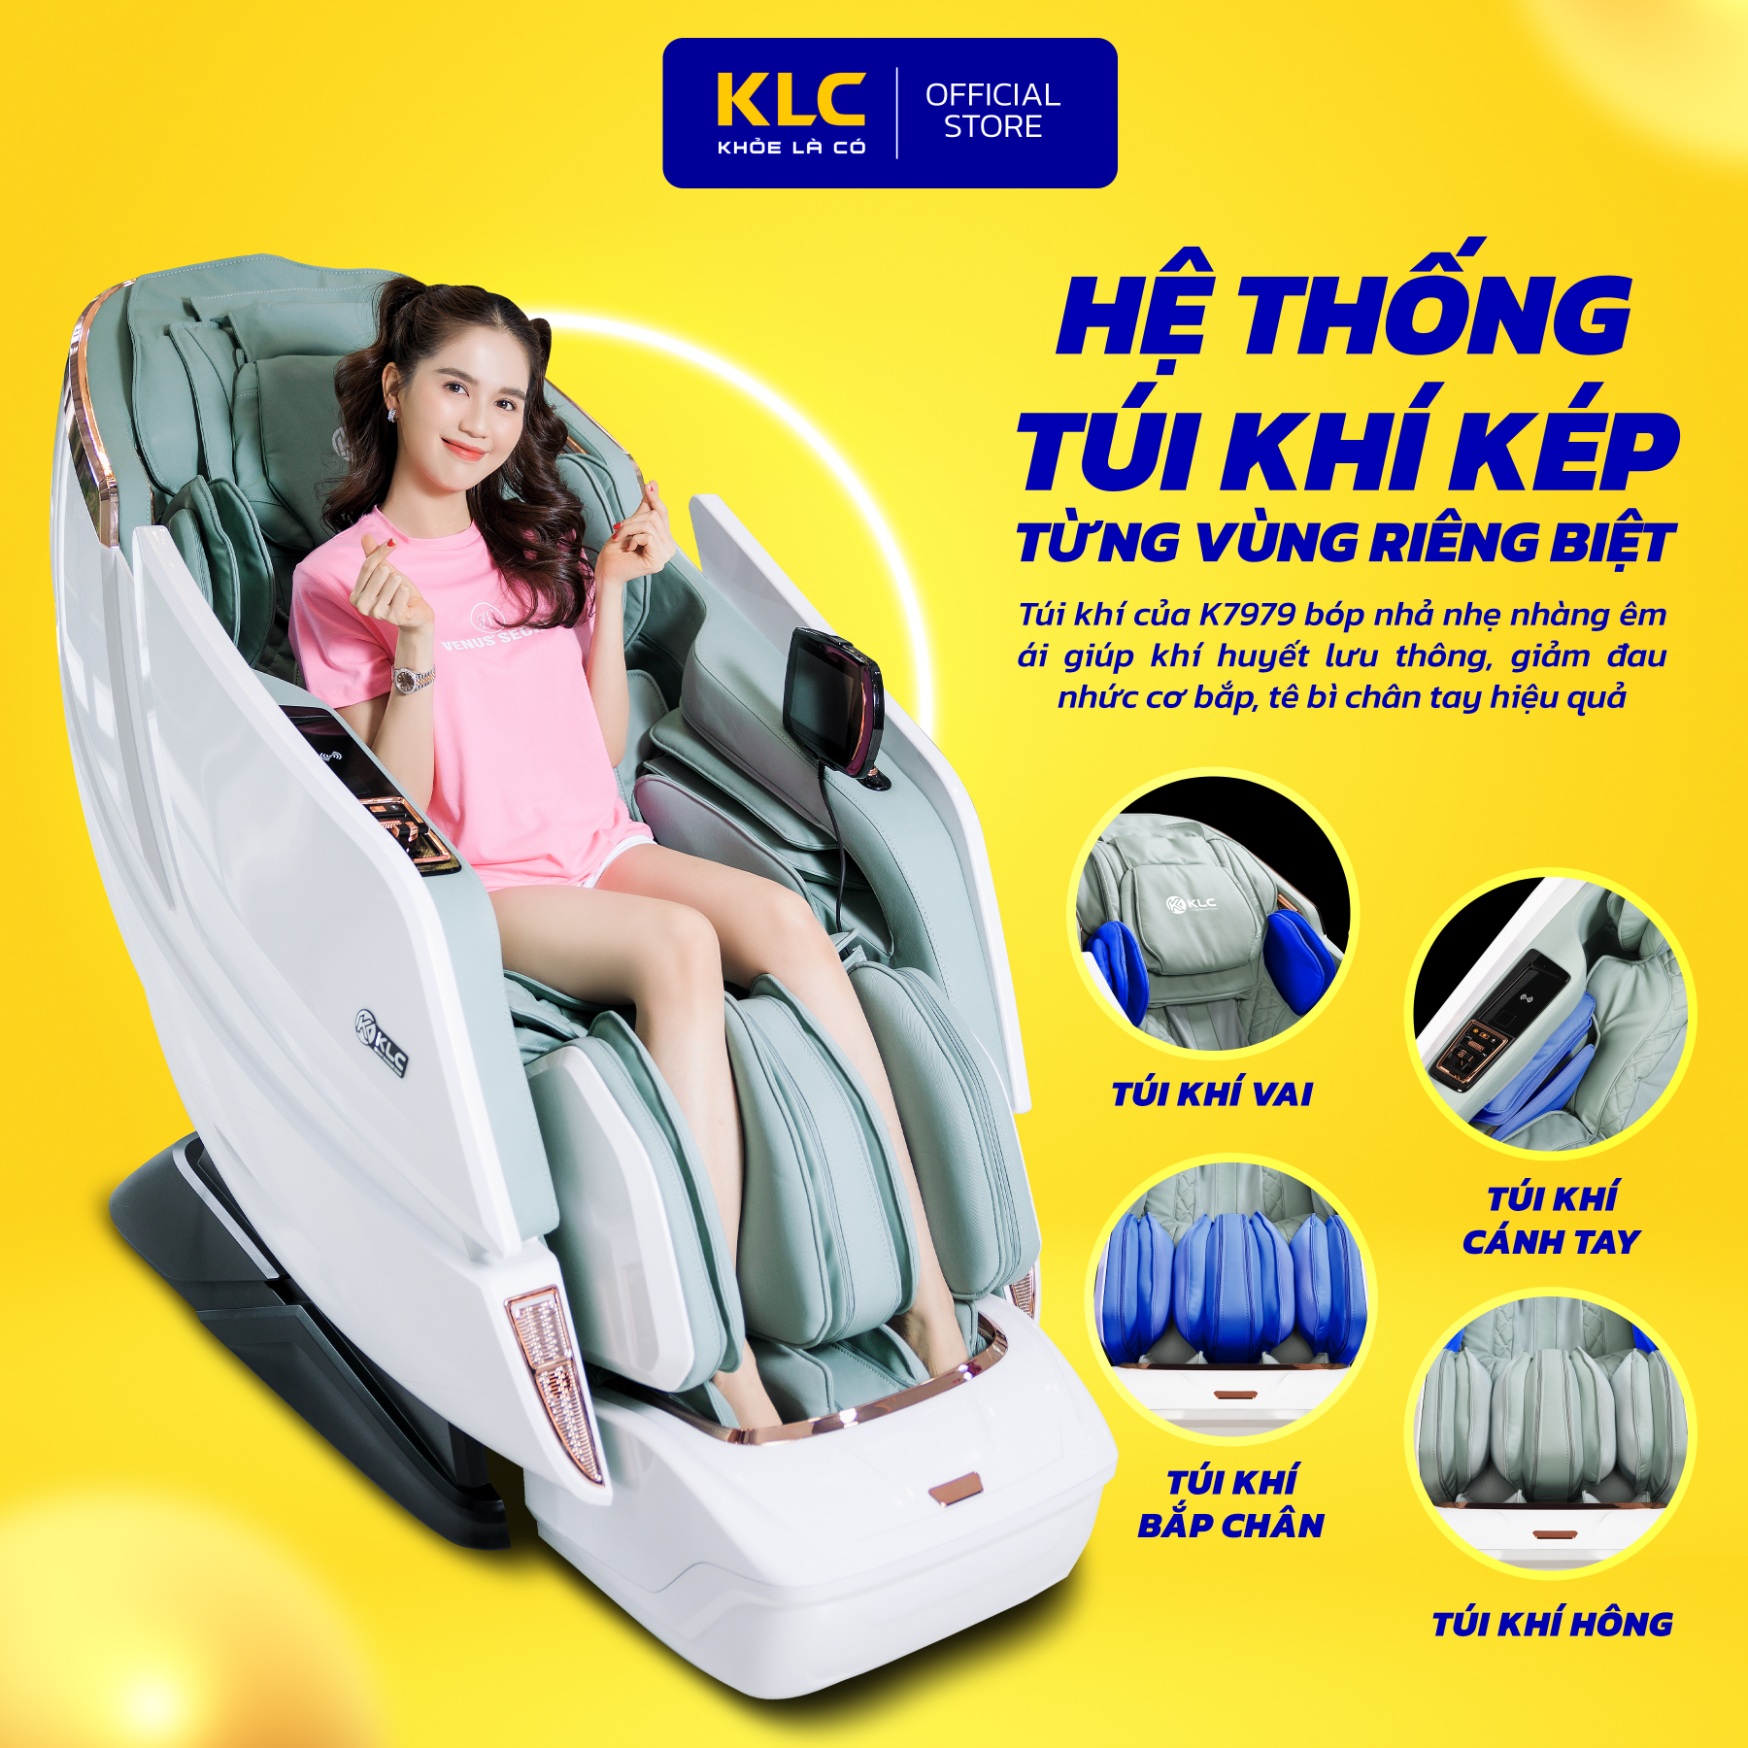 Ghế massage toàn thân cao cấp KLC K7979, công nghệ hồng ngoại, body scan, con lăn 4D kết hợp sóng não thư giãn